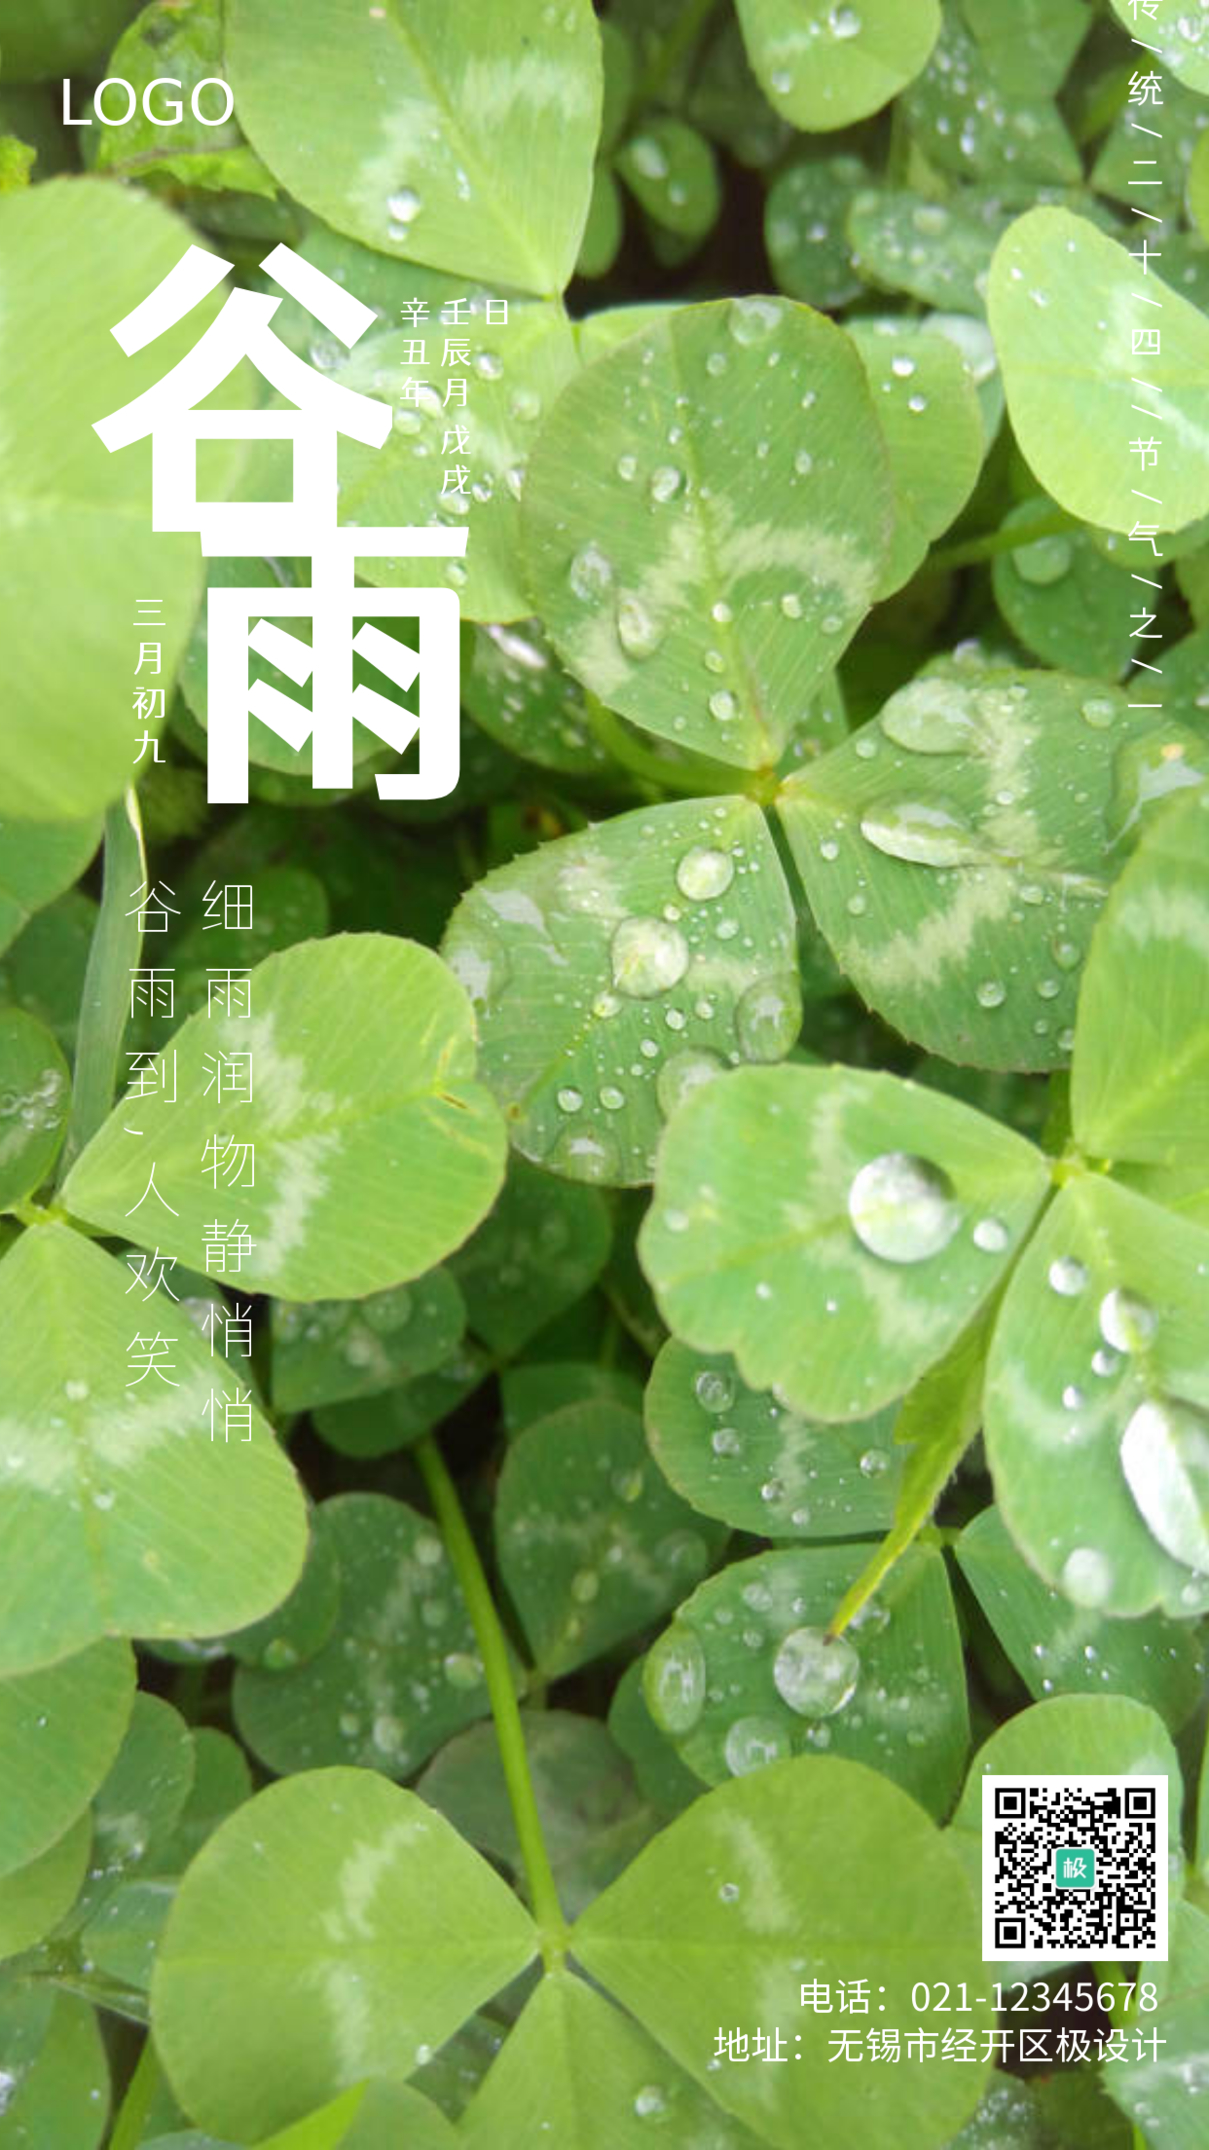 中华传统节气之谷雨手机摄影图海报